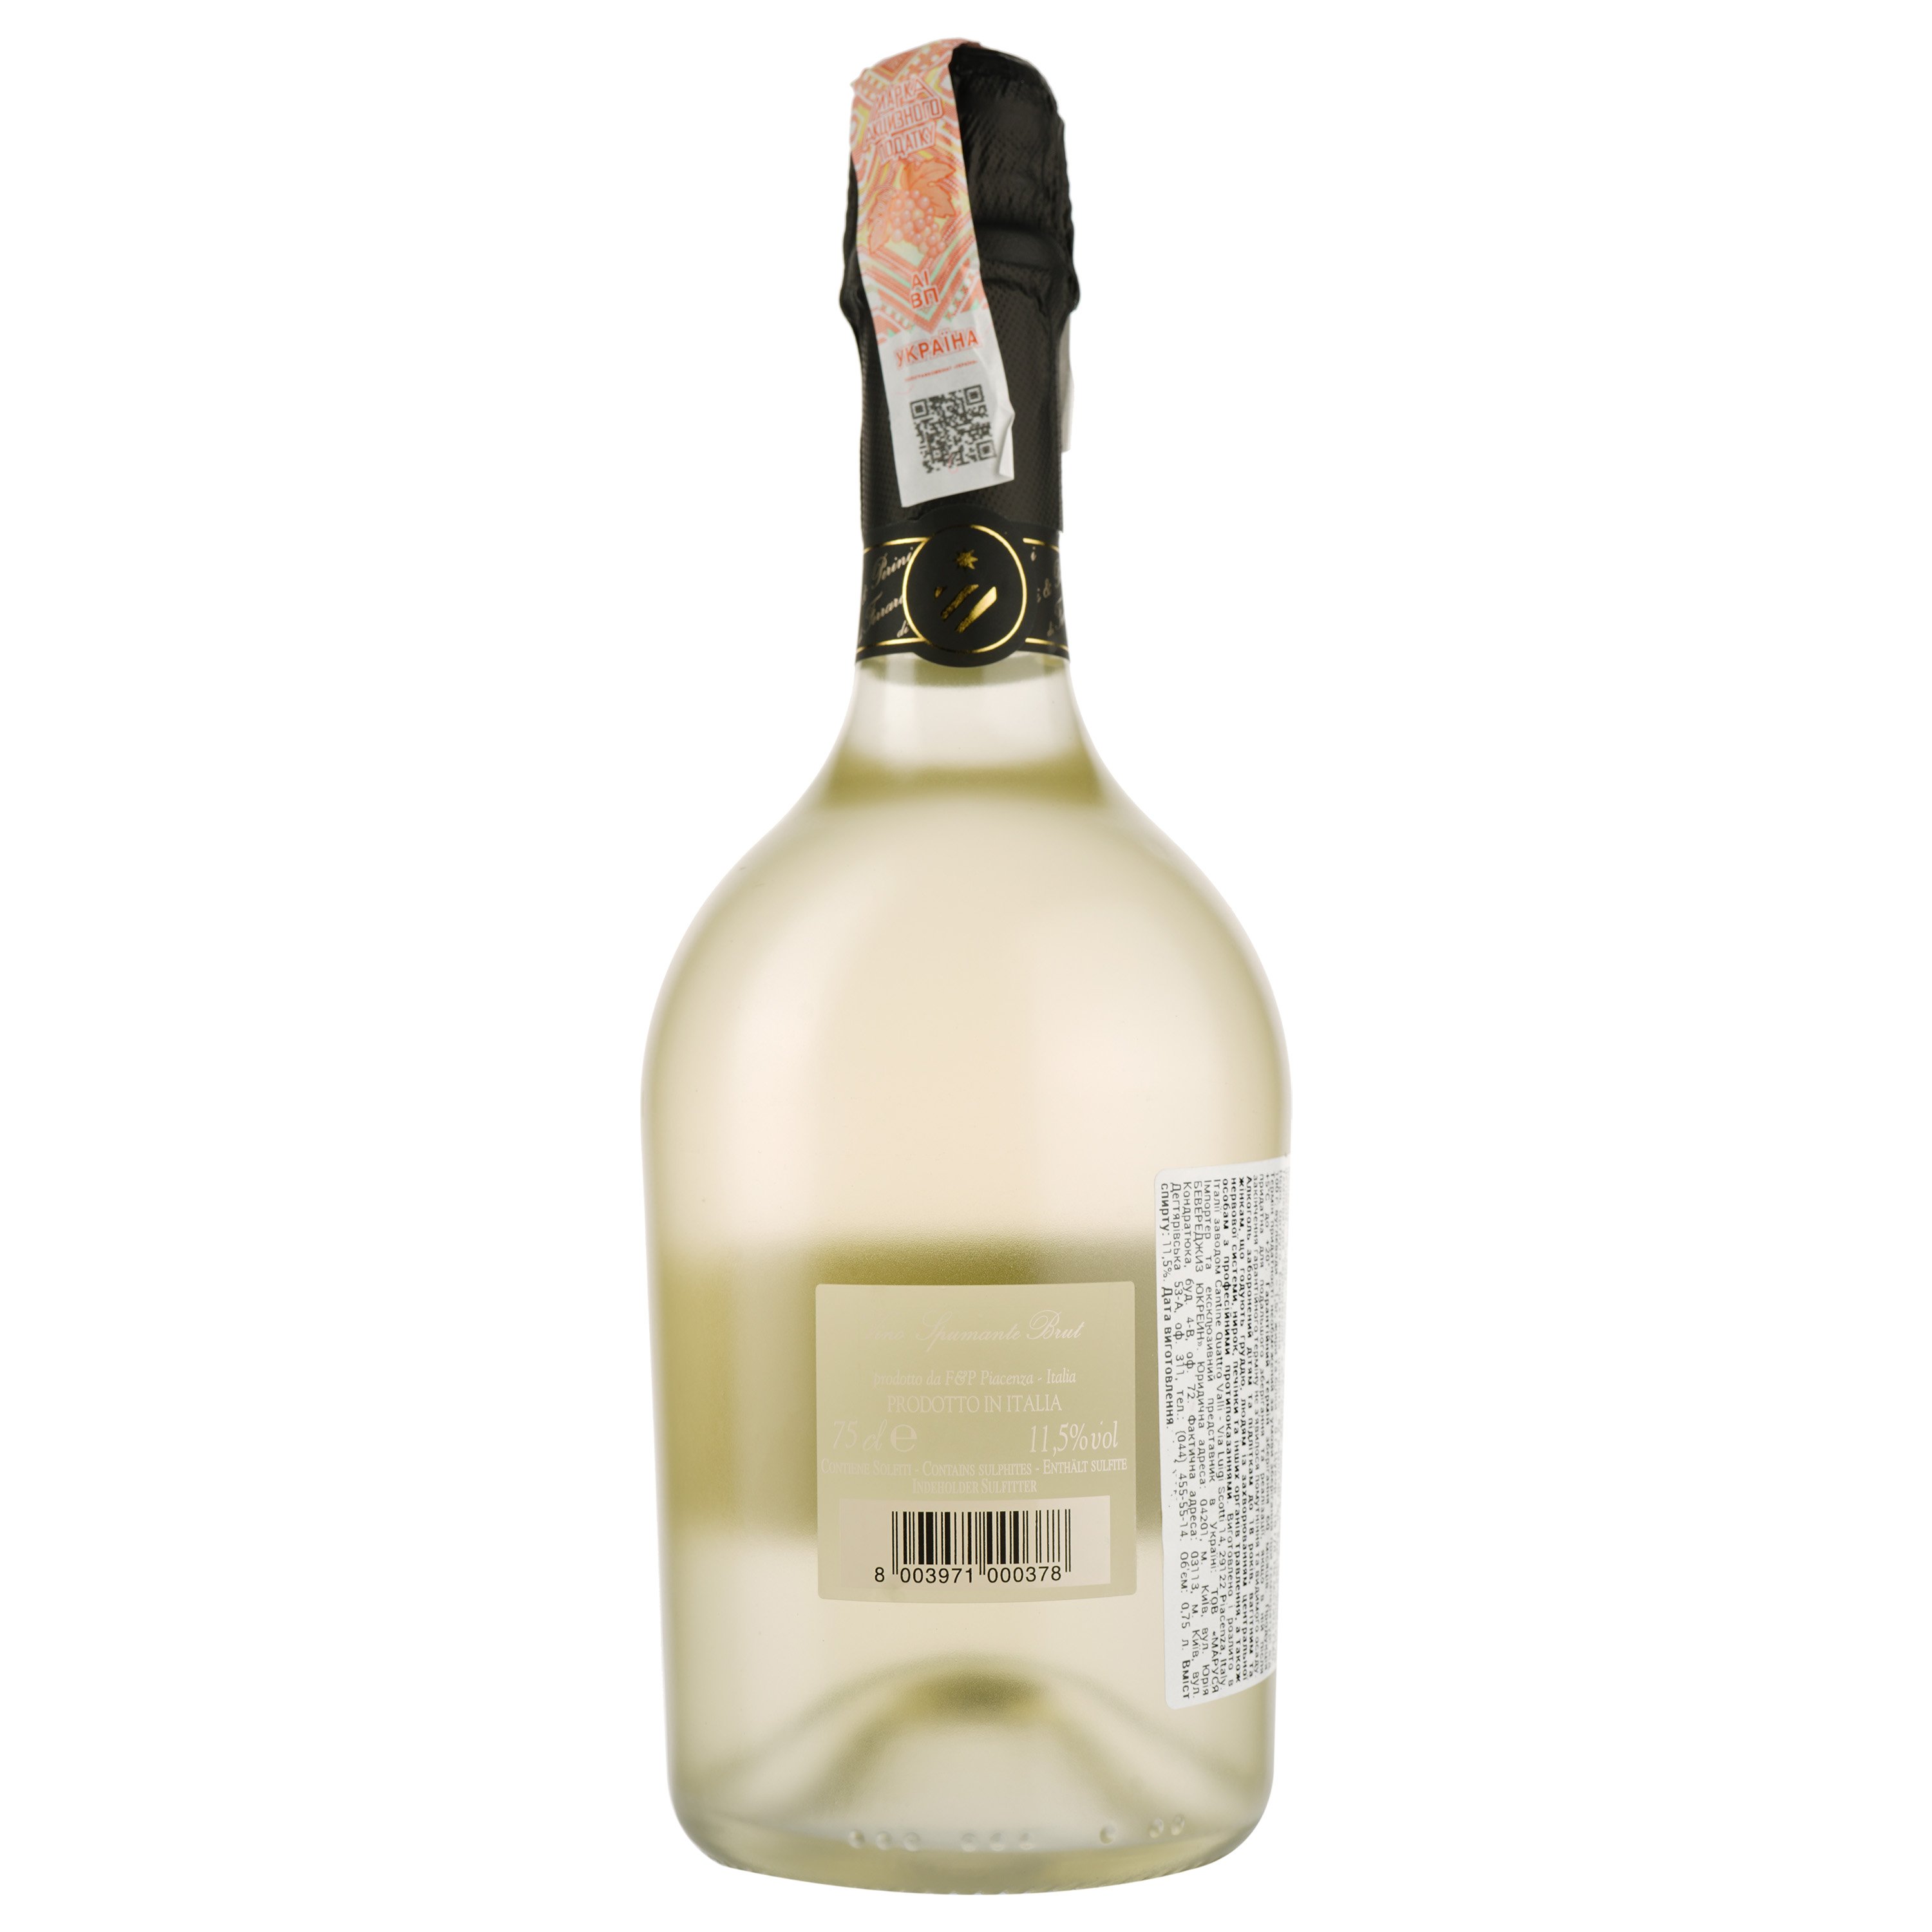 Ігристе вино Perini&Perini Spumante brut, біле, брют, 11,5%, 0,75 л - фото 2